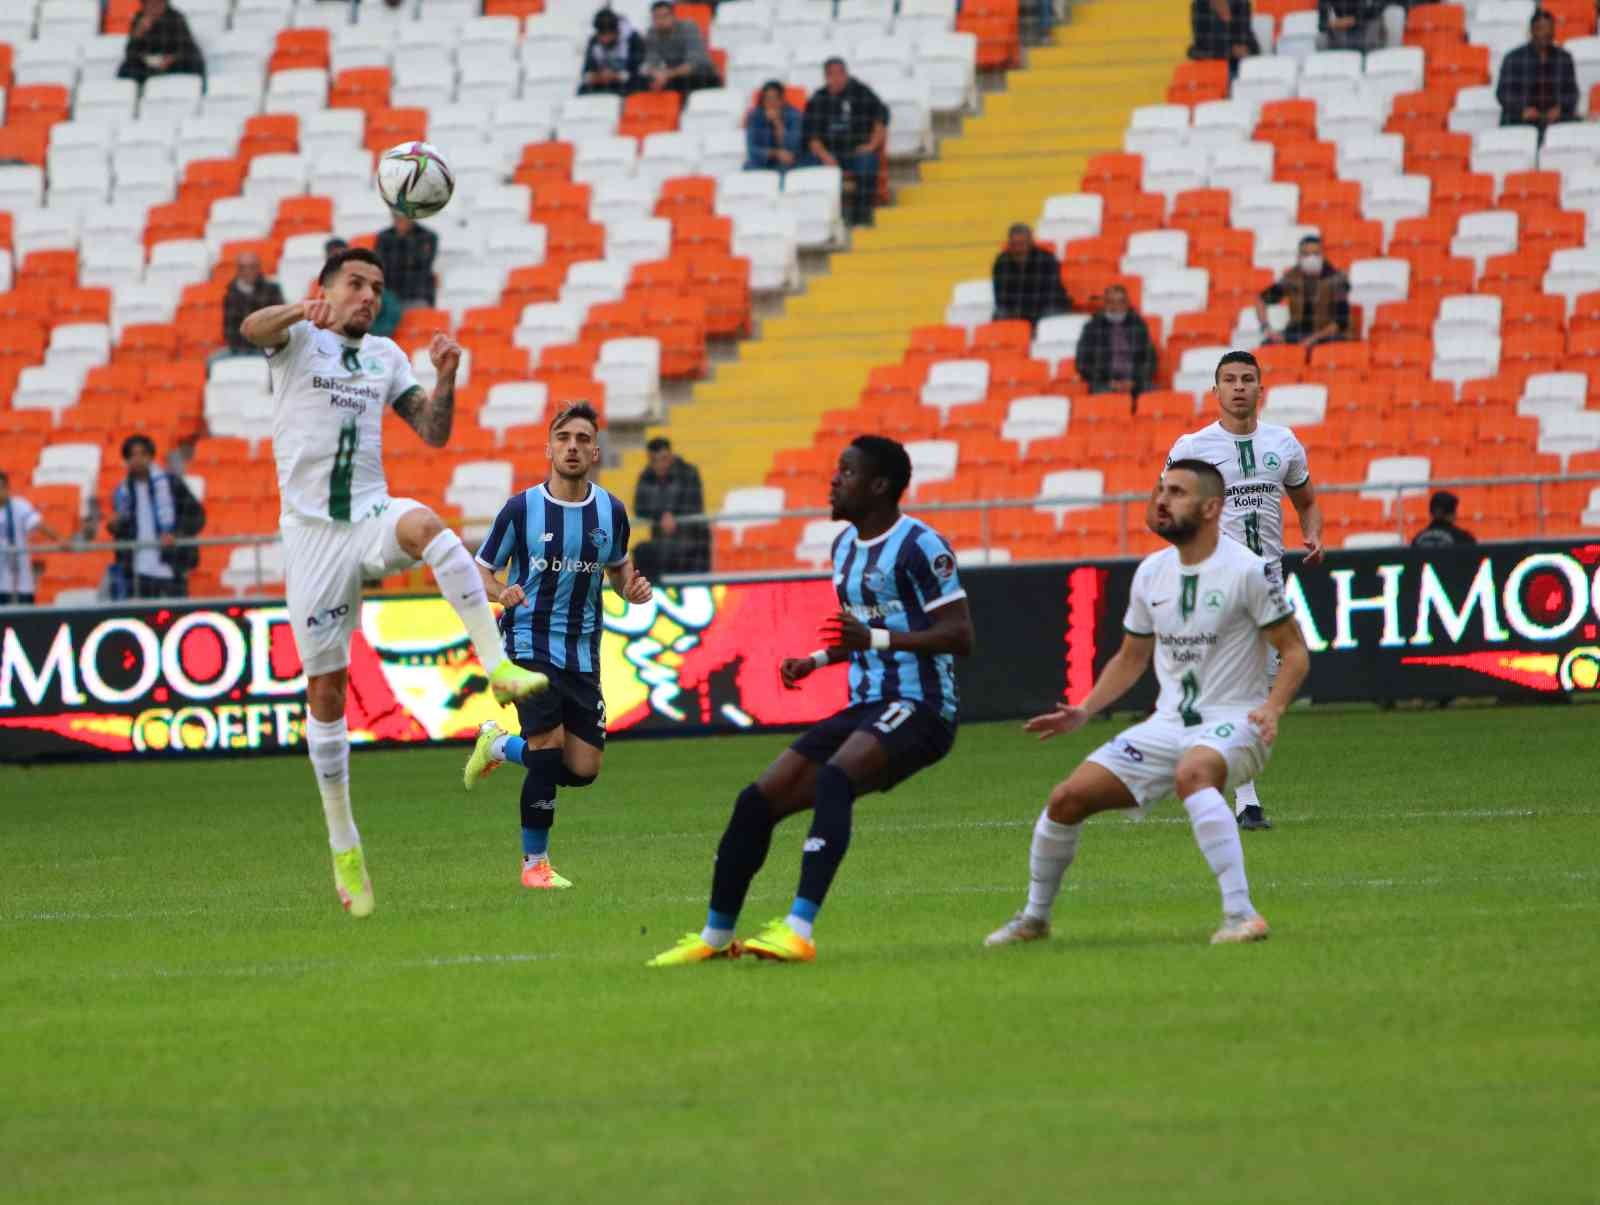 Spor Toto Süper Lig: Adana Demirspor: 0 - Giresunspor: 0 (Maç devam ediyor) #adana